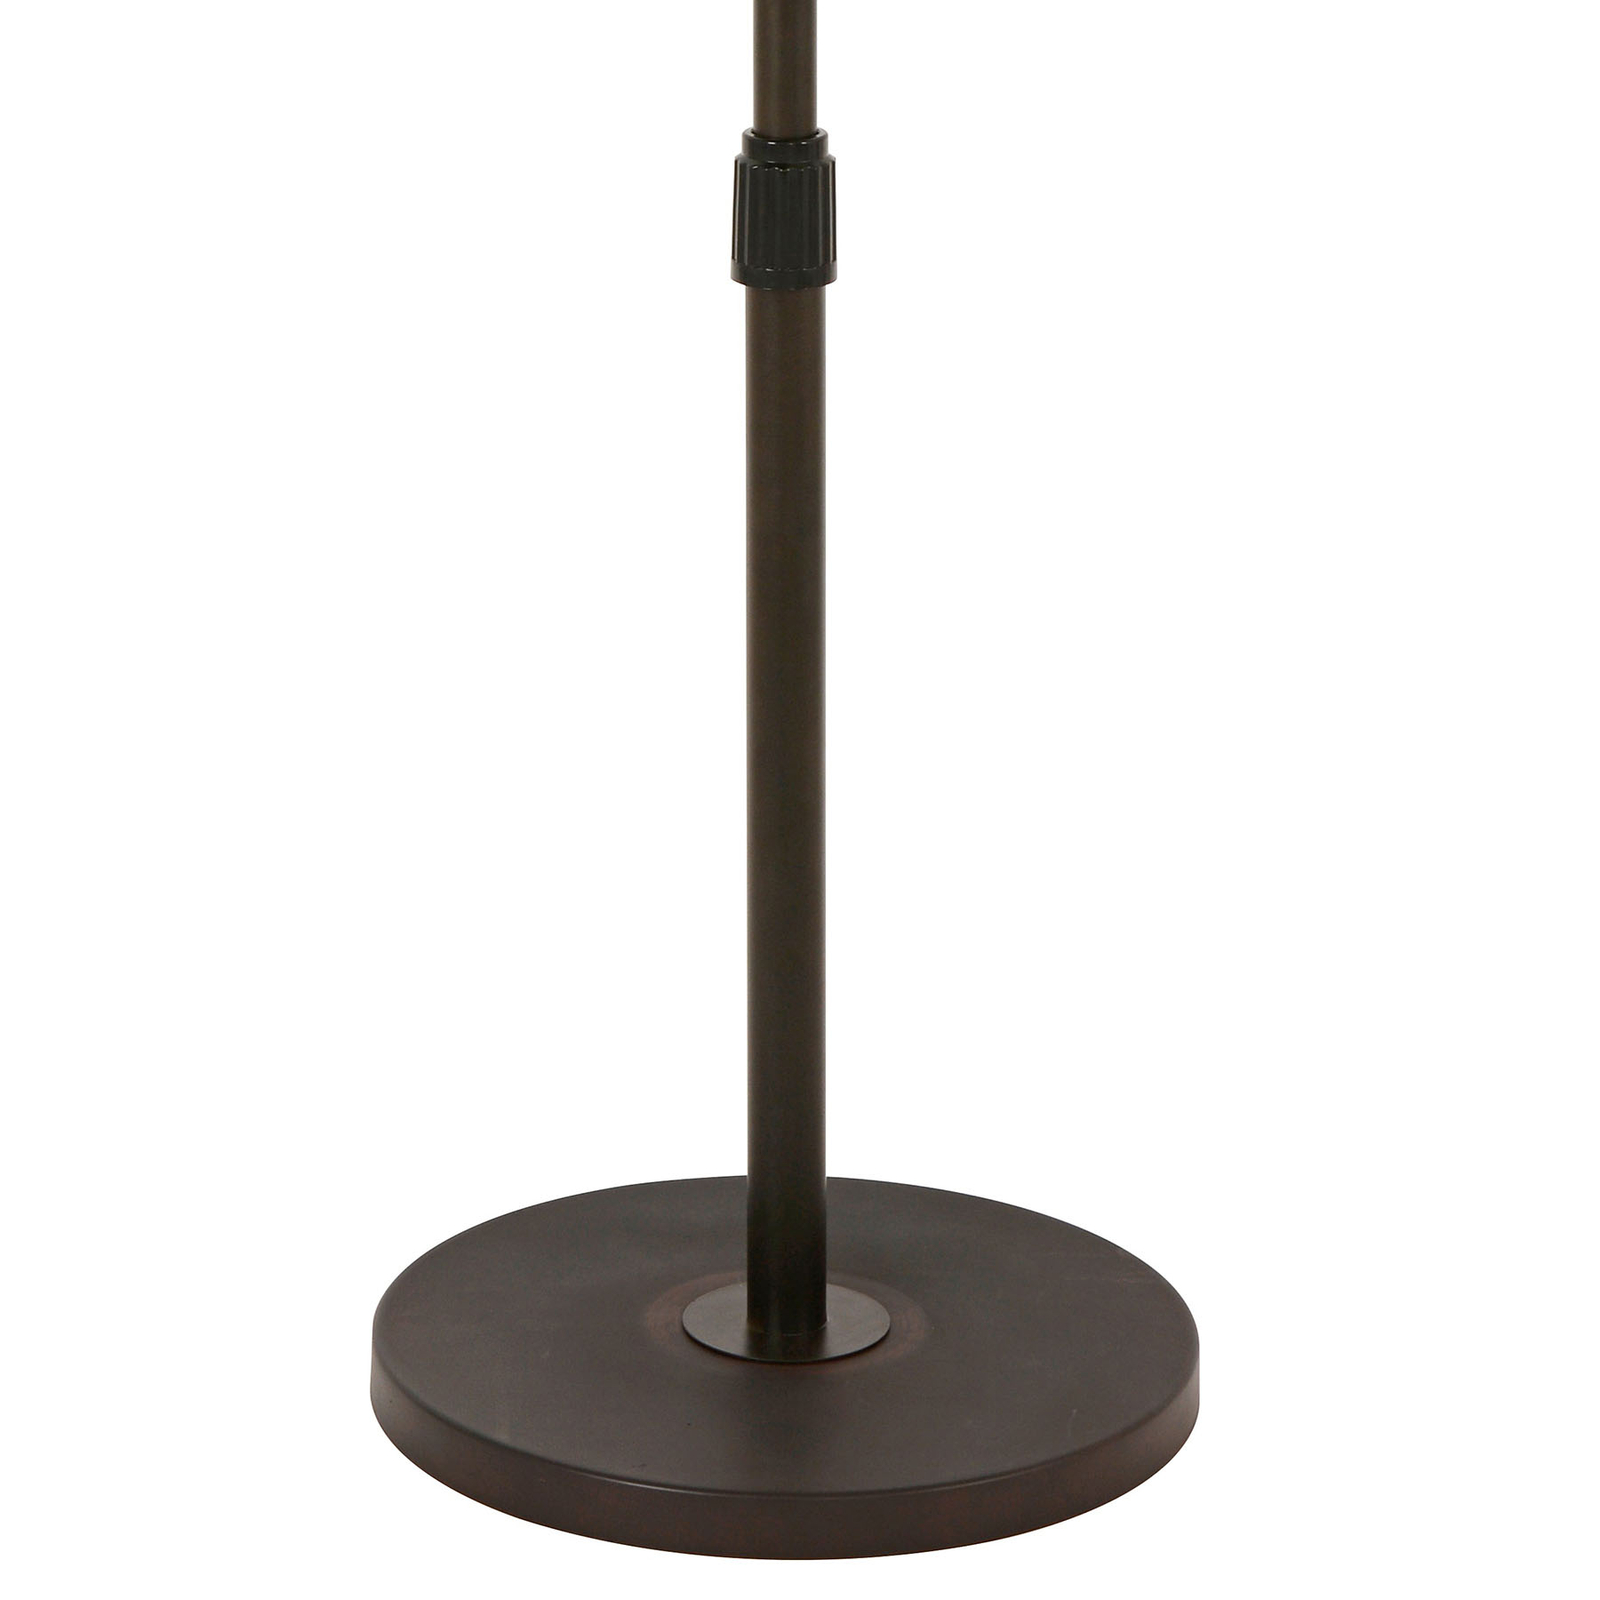 Beacon állványos ventilátor Breeze bronz színű, kerek talapzat, csendes